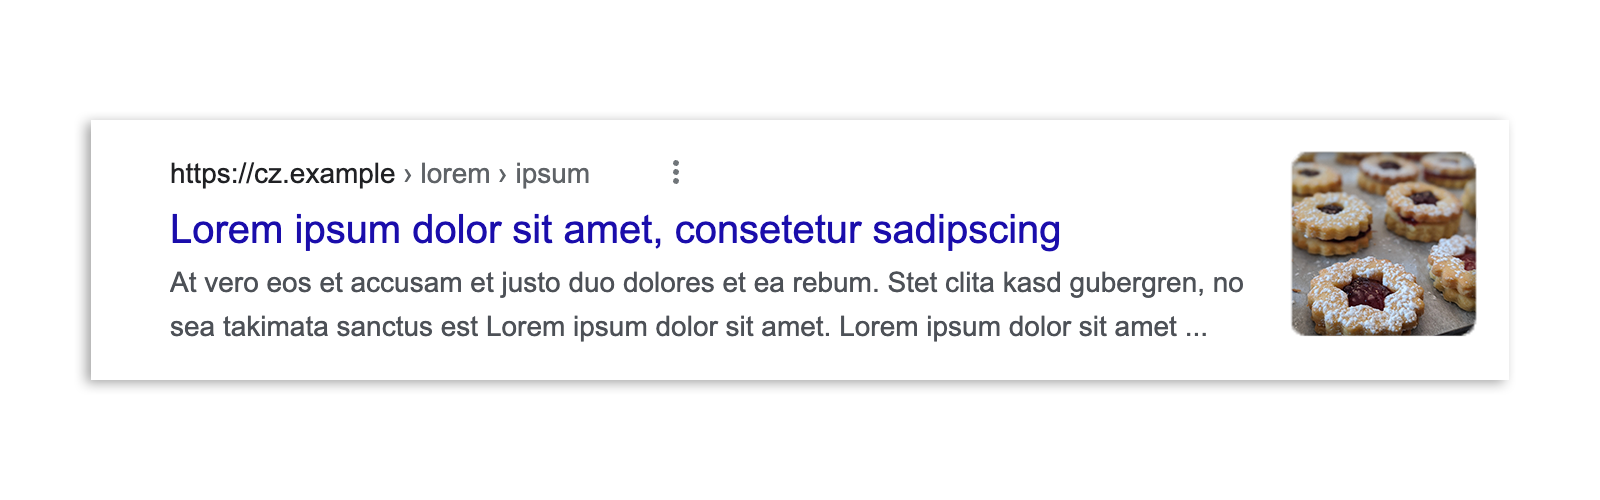 Một kết quả trên Google Tìm kiếm ở Séc trước khi luật này được ban hành, bao gồm đoạn trích của bài viết, bản xem trước hình ảnh, tiêu đề và URL.